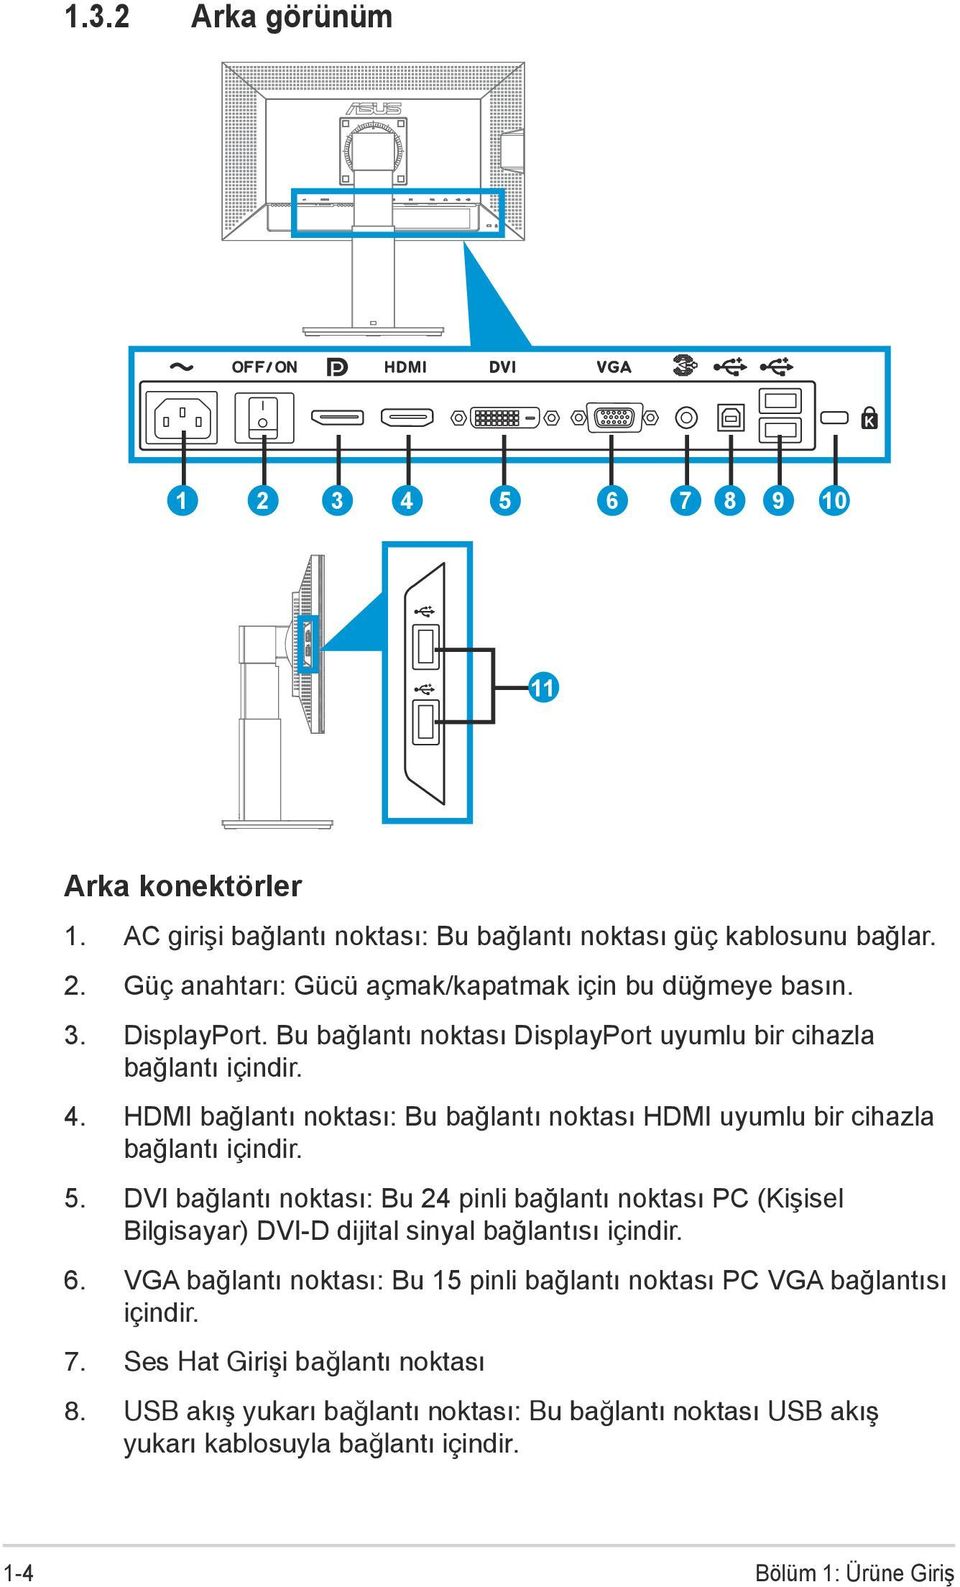 DVI bağlantı noktası: Bu 24 pinli bağlantı noktası PC (Kişisel Bilgisayar) DVI-D dijital sinyal bağlantısı içindir. 6.